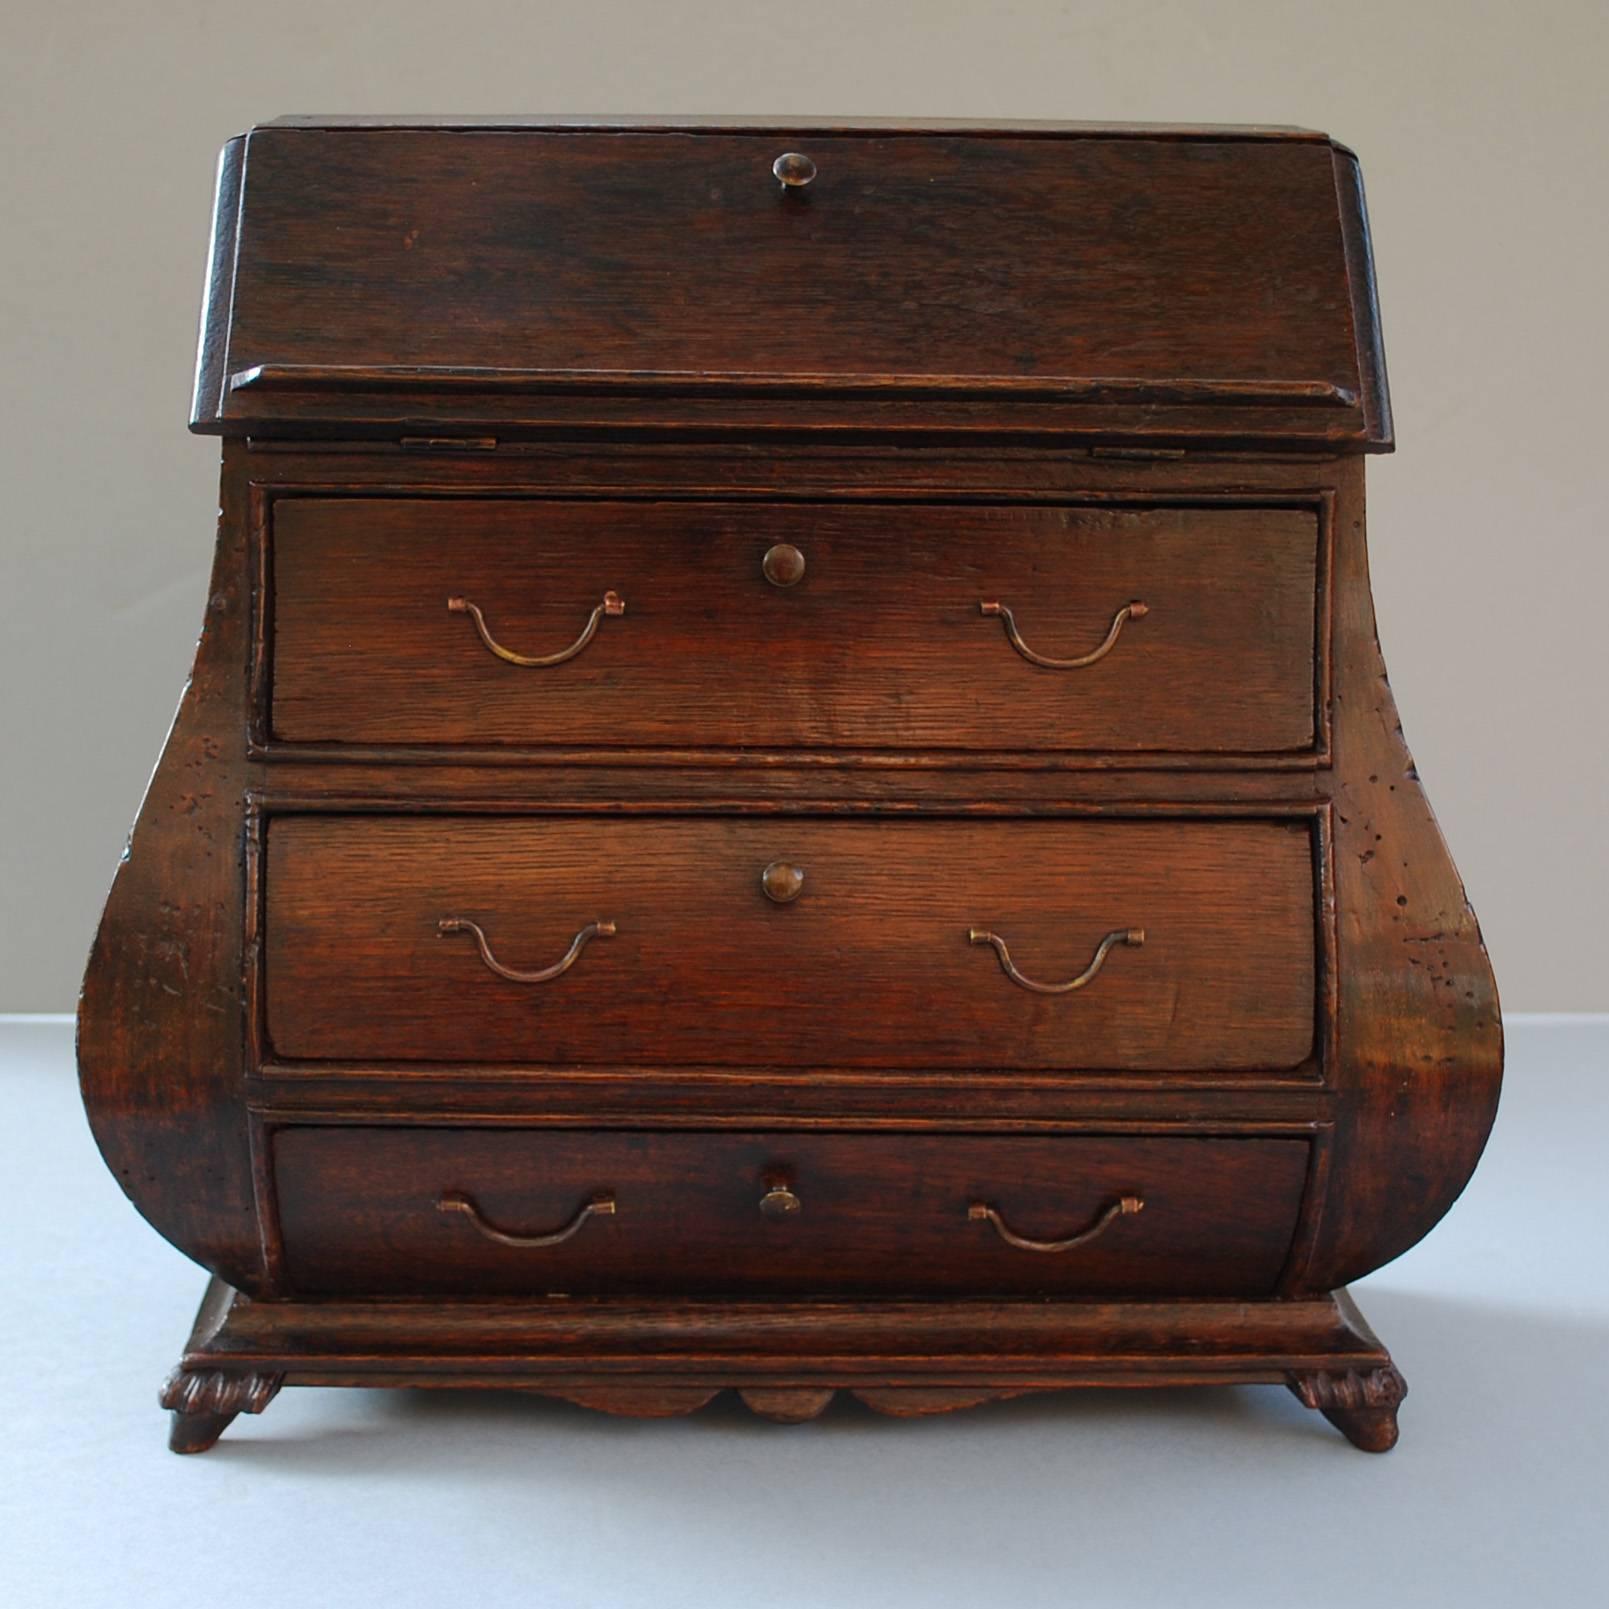 armoire secrète miniature du XIXe siècle en bois de chêne.
Objet décoratif, peut être utilisé comme boîte à bijoux/à lettres.
Originaire des Pays-Bas, datant, vers 1800
